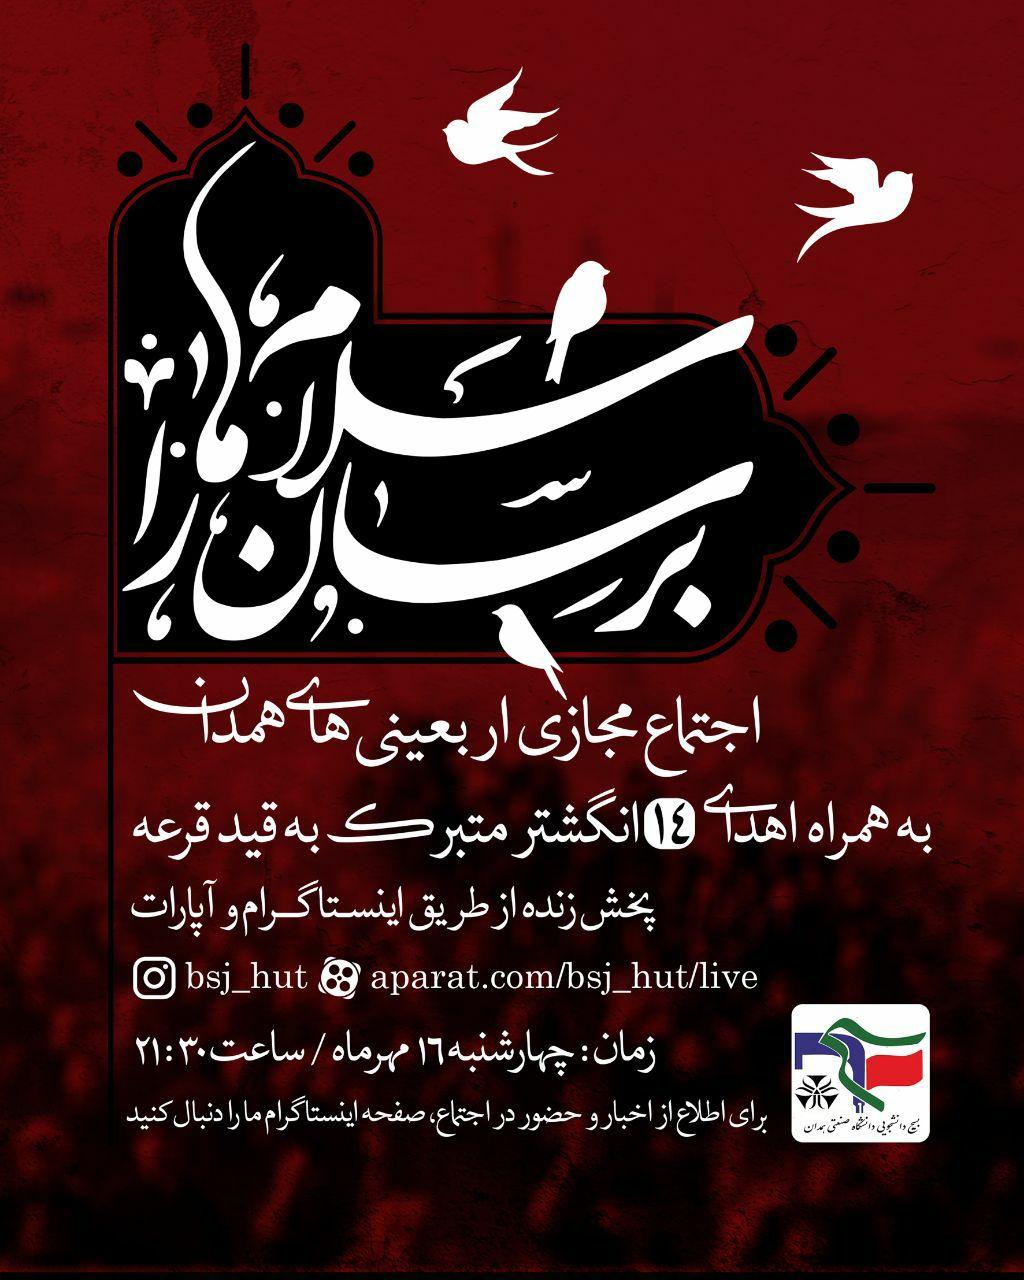 اجتماع مجازی اربعین حسینی به همت دانشجویان دانشگاه صنعتی همدان برگزار می شود